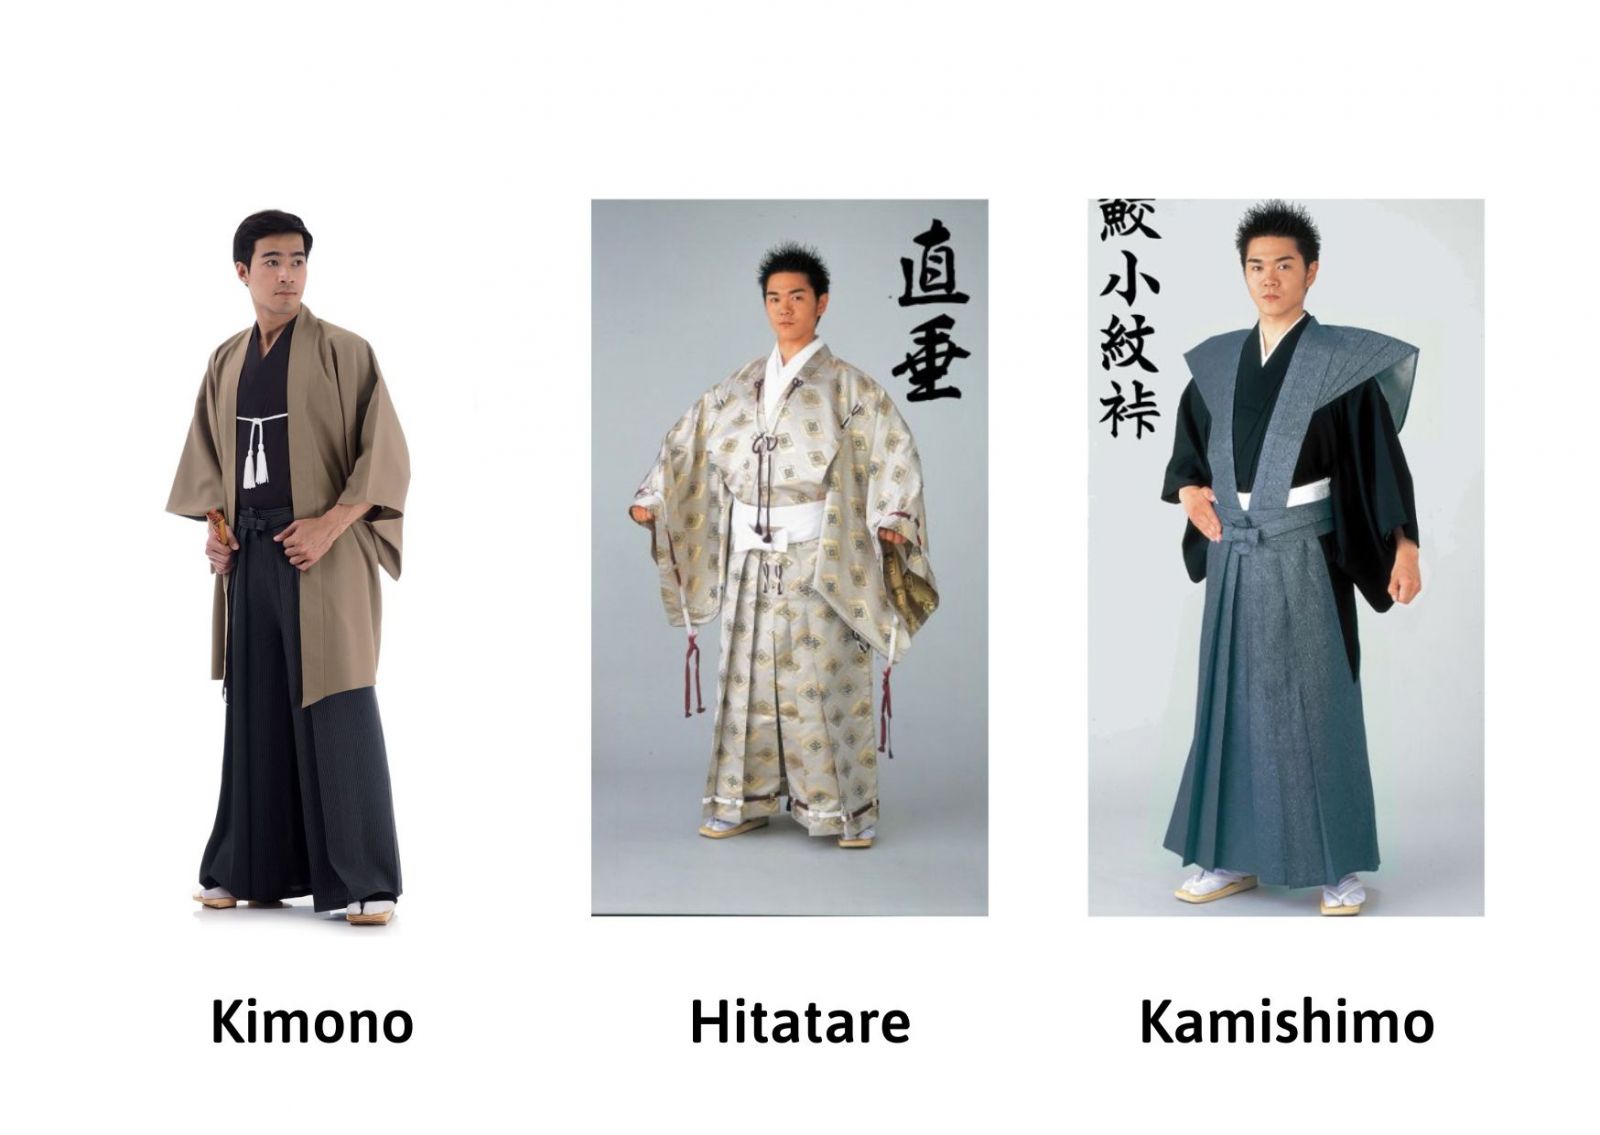 Ba loại trang phục cơ bản của Samurai Nhật Bản